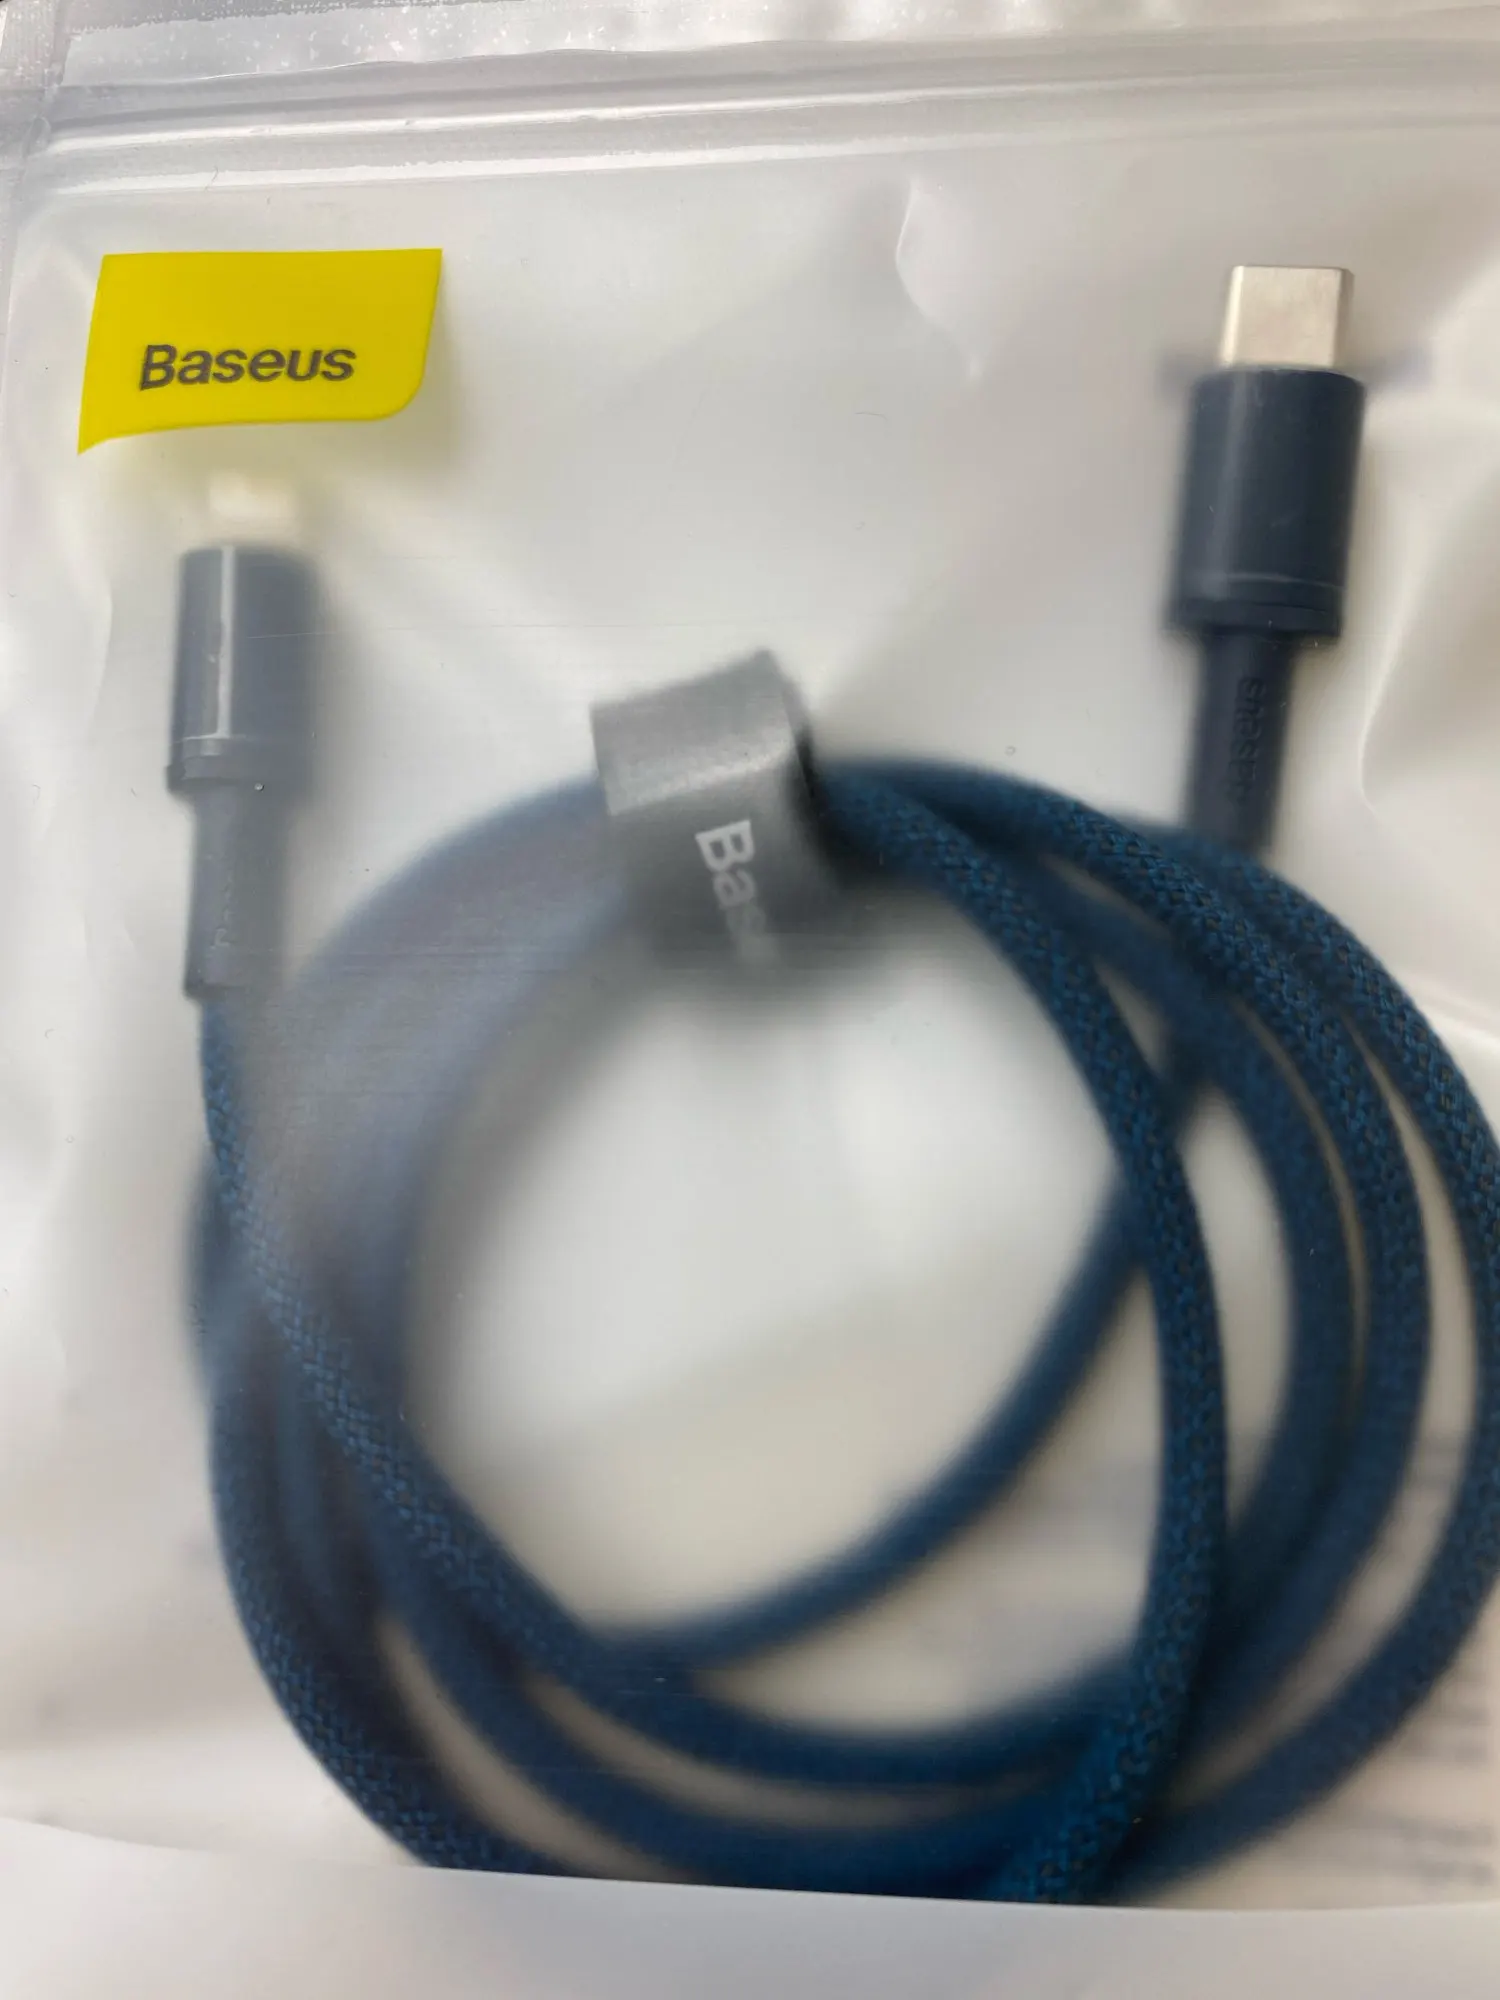 Baseus 20W USB tipo C a cable de iluminación Datos PD Carga rápida para iPhone 12 Mini Pro Max revisión de fotos